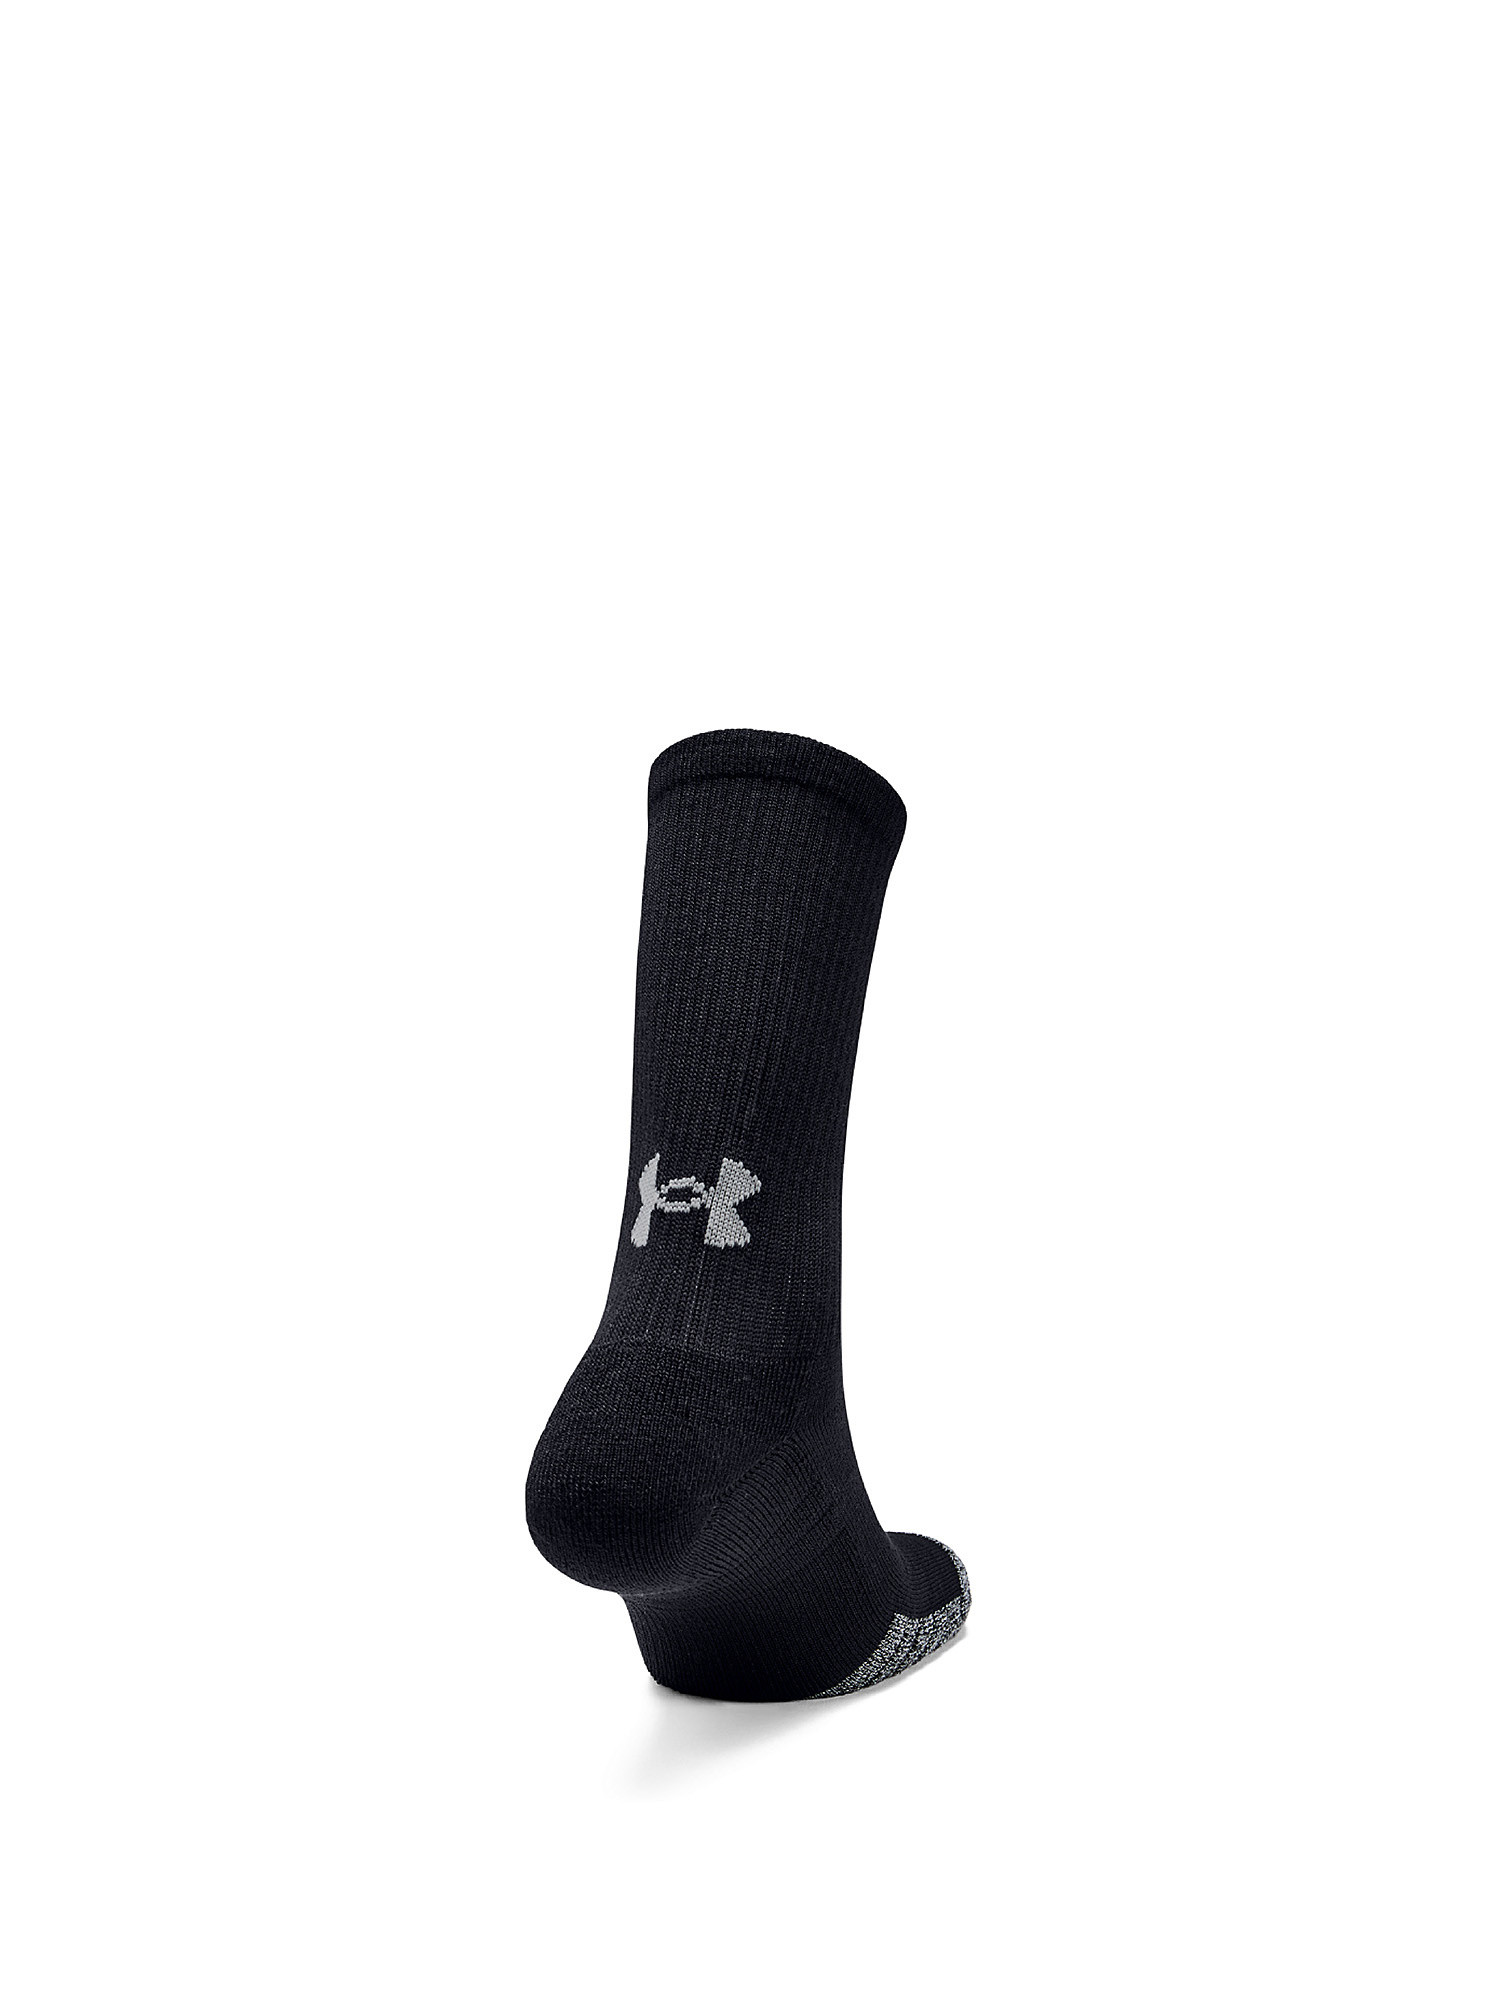 Under Armour - HeatGear® Crew socks, Black, large image number 2